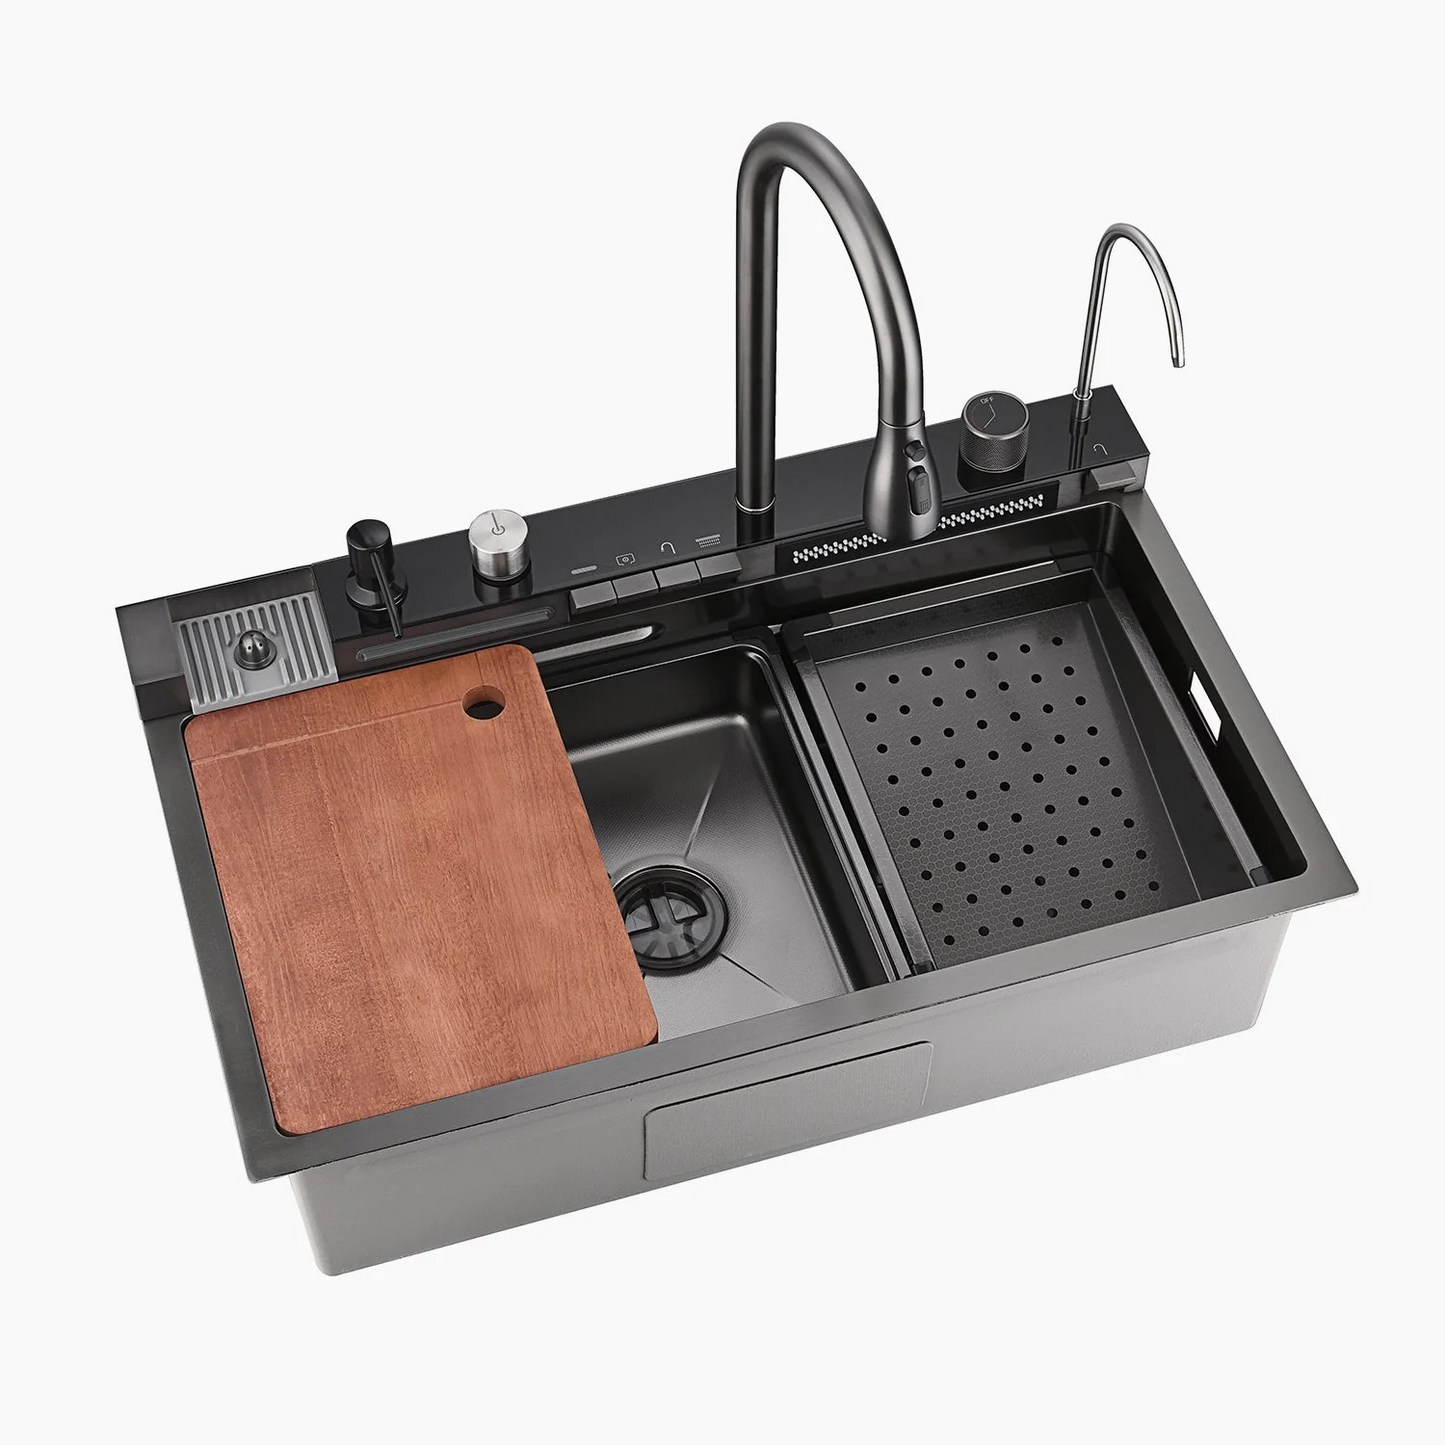 Bliote™ Wasserfall-Arbeitsplatz-Küchenspülen-Set mit digitaler Temperaturanzeige